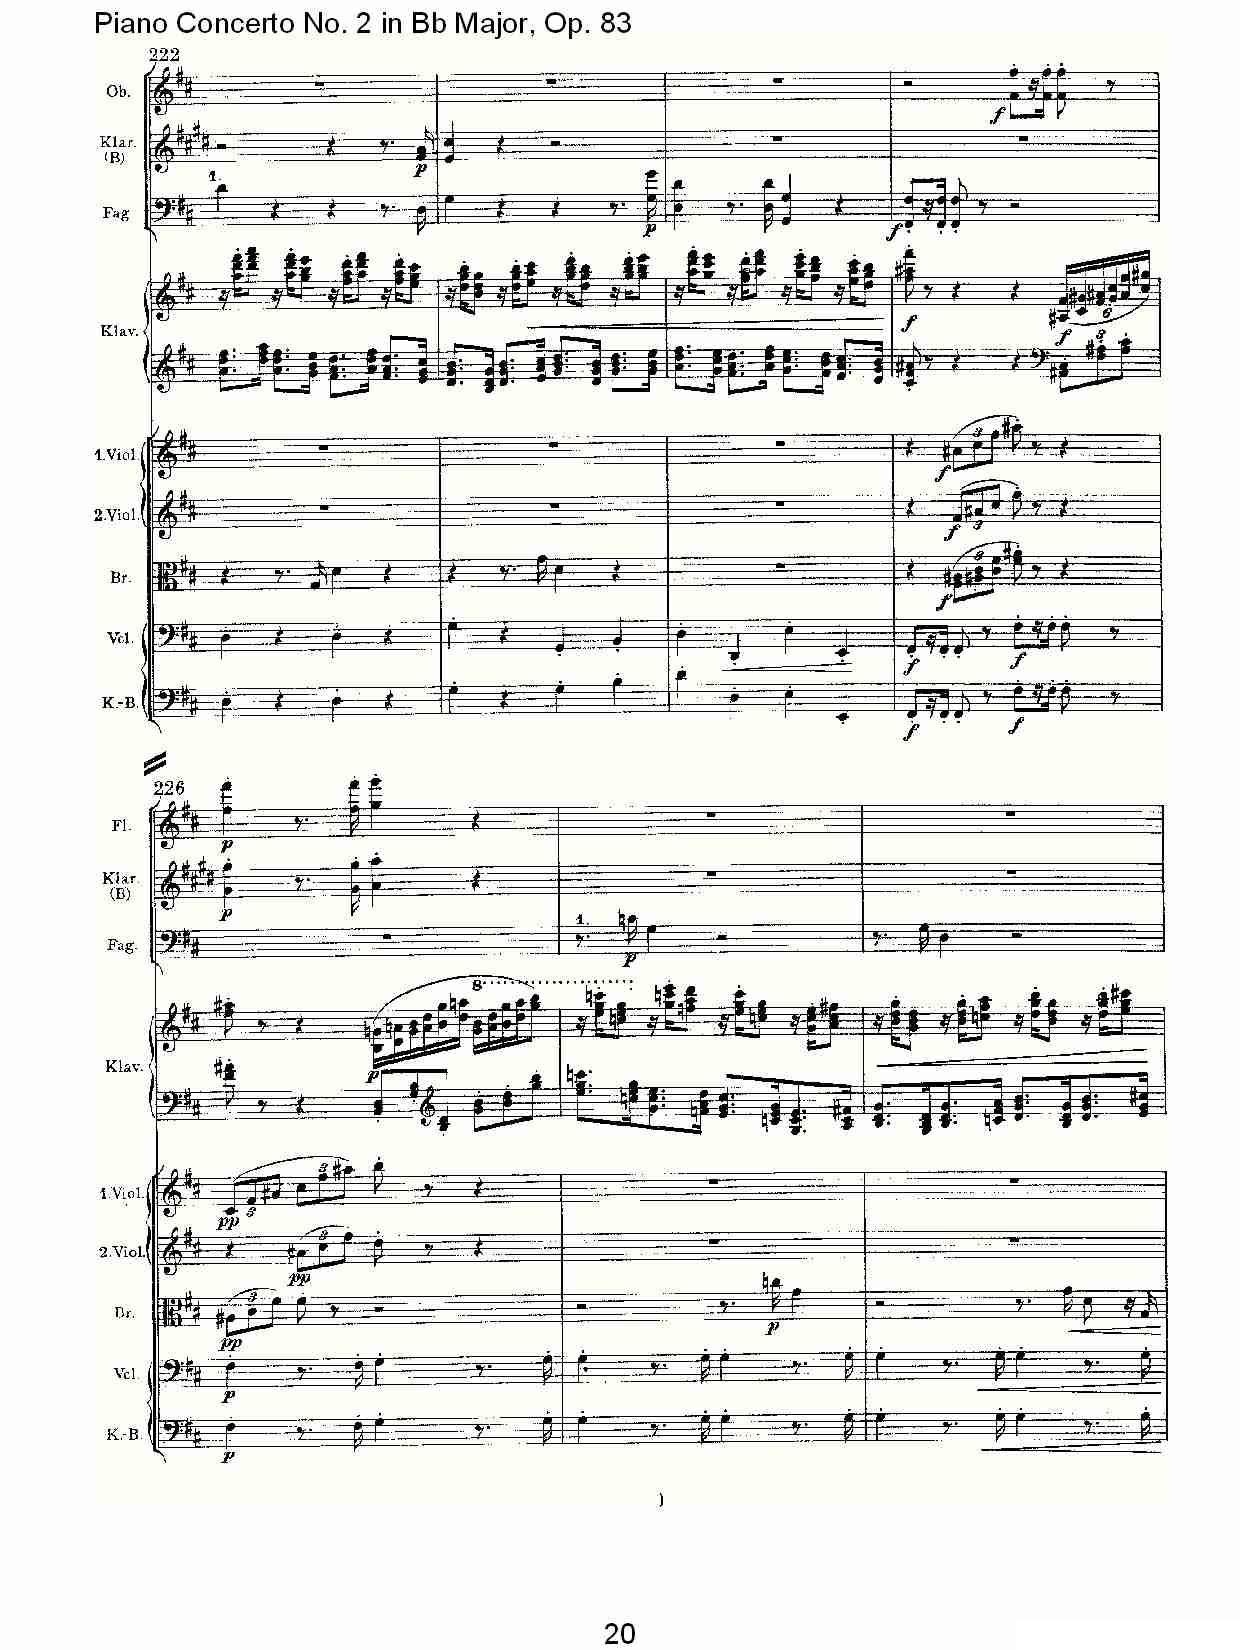 Bb大调钢琴第二协奏曲, Op.83第一乐章（一）钢琴曲谱（图20）